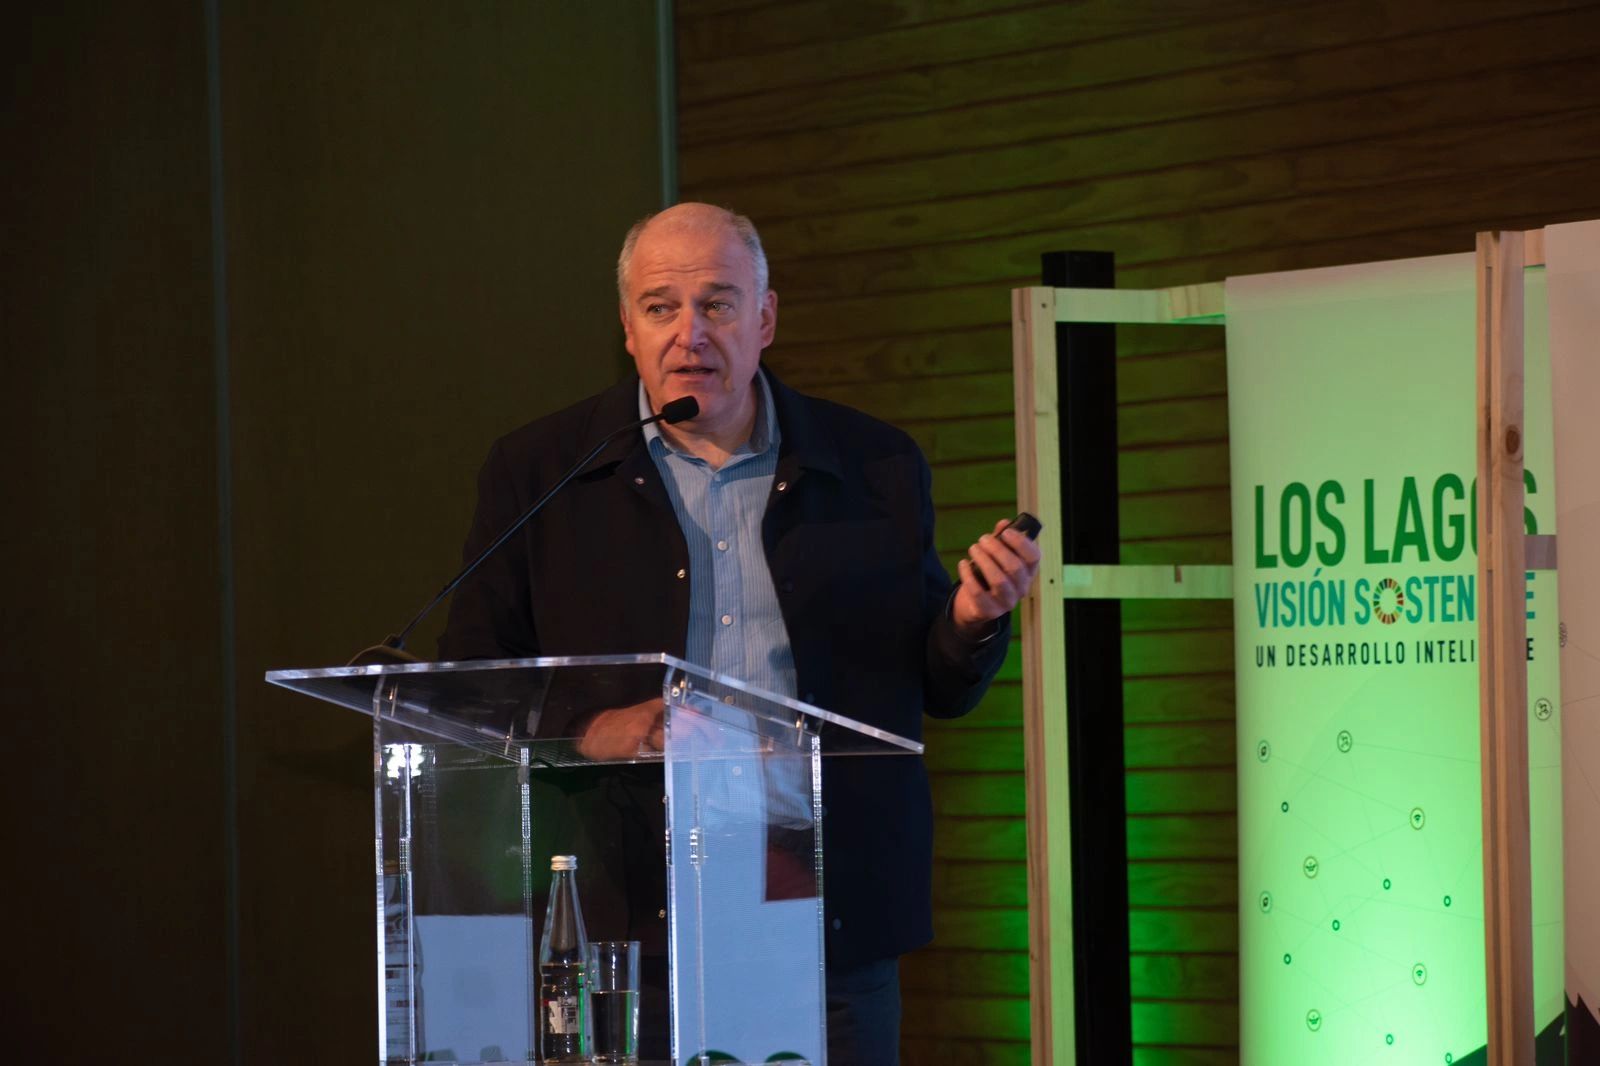 BILBAO URBAN ABRE EL CONGRESO “LOS LAGOS – VISIÓN SOSTENIBLE” EN CHILE